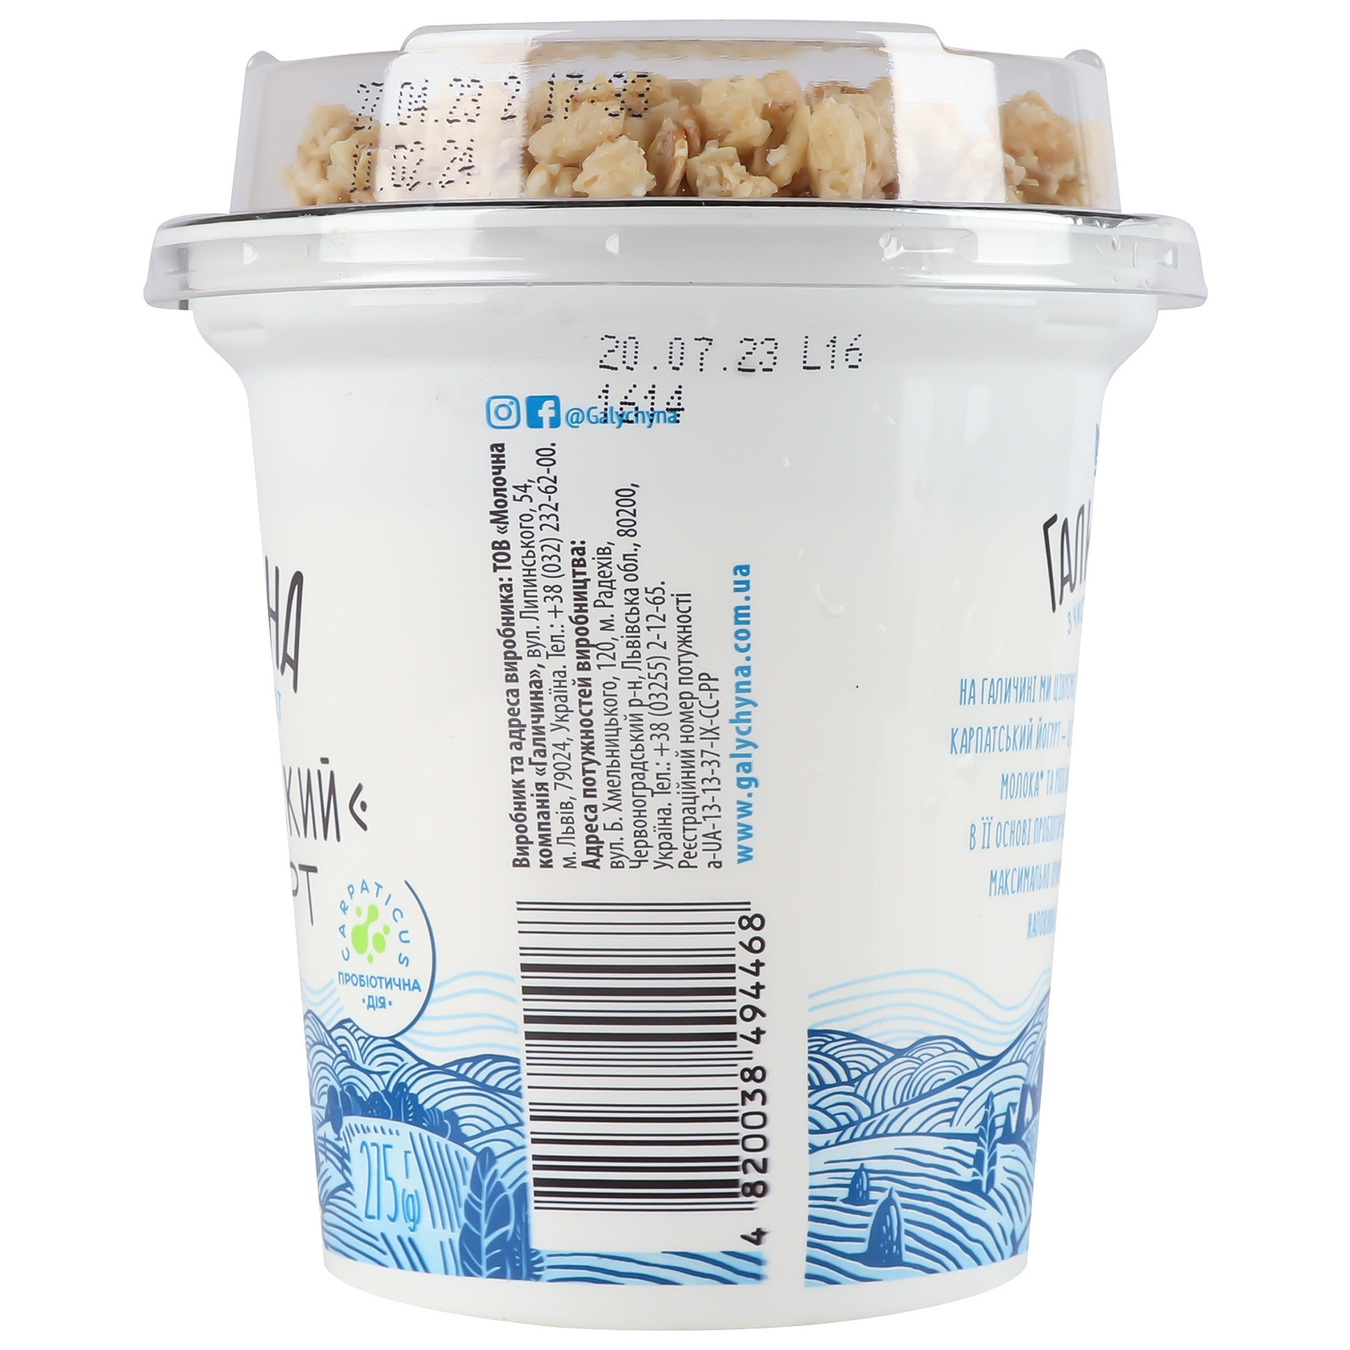 Galychyna Carpathian Sugar-Free Granola Flavored Yogurt 3% 275g 5